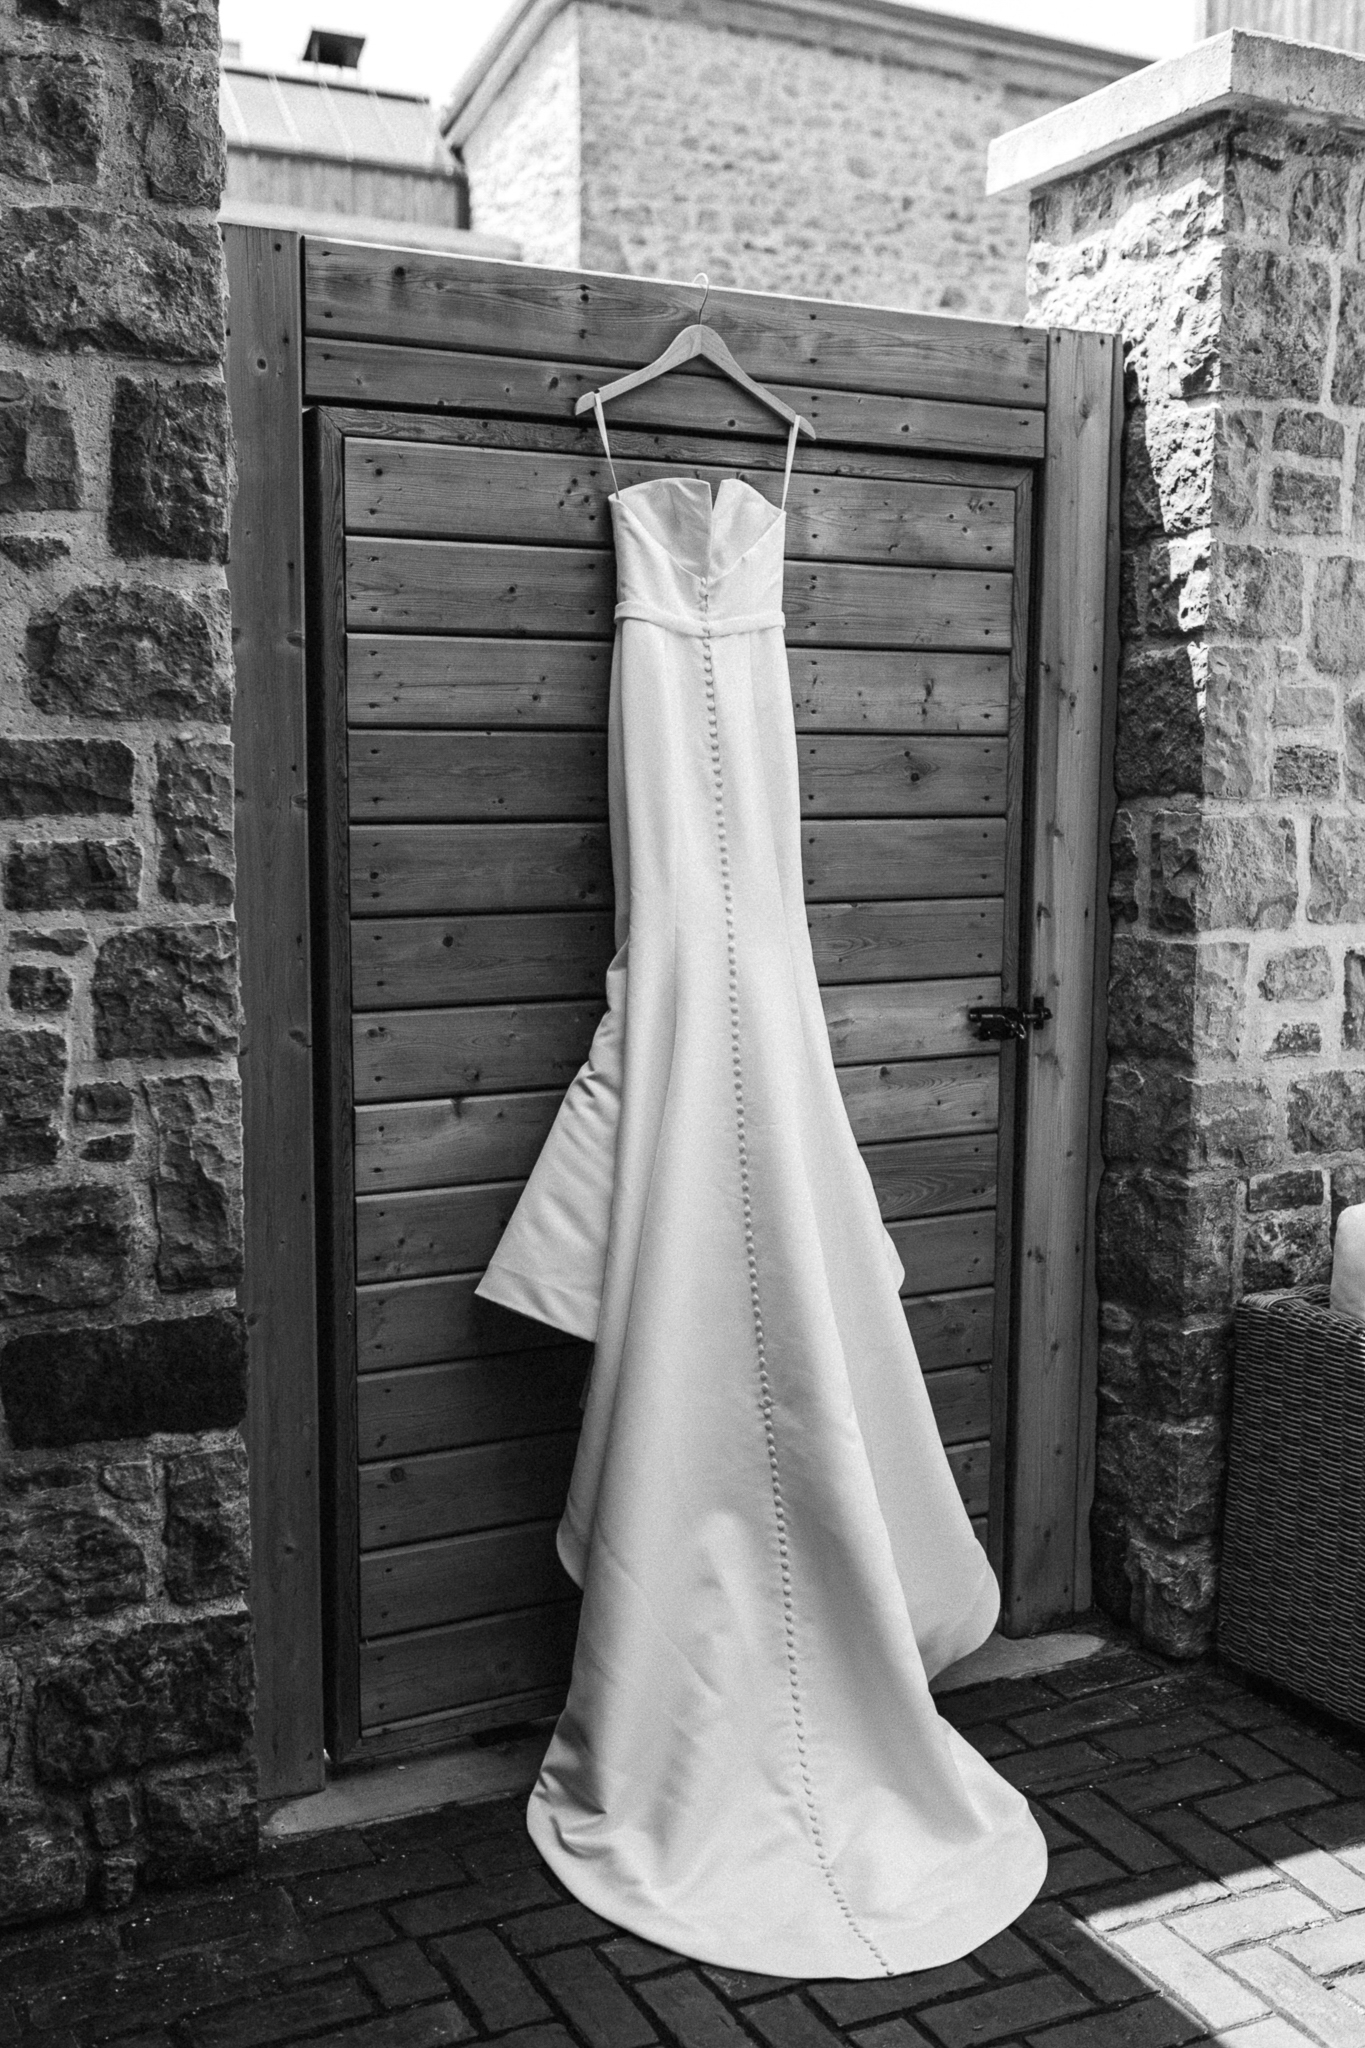 A wedding dress gracefully adorns a rustic wooden door.